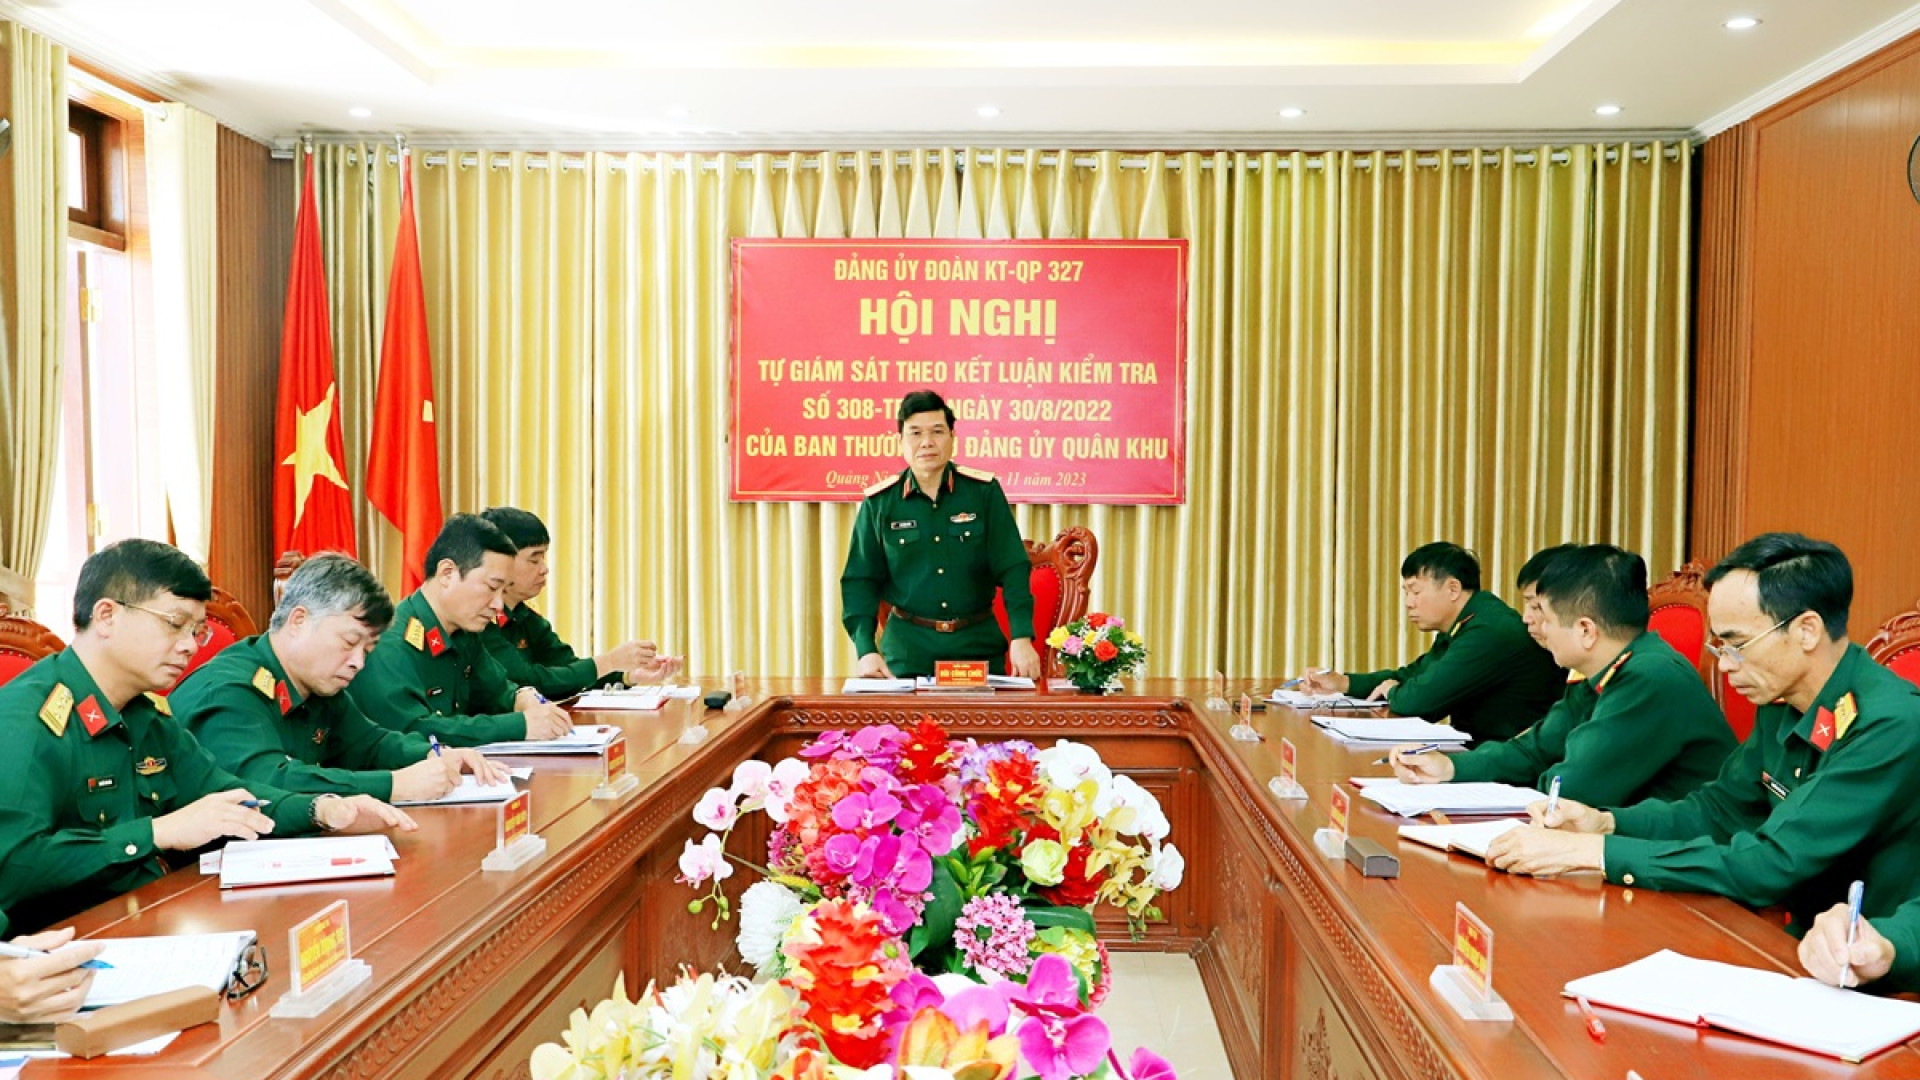 Ủy ban Kiểm tra Đảng ủy Quân khu giám sát chuyên đề đối với Đảng ủy Đoàn KT-QP 327